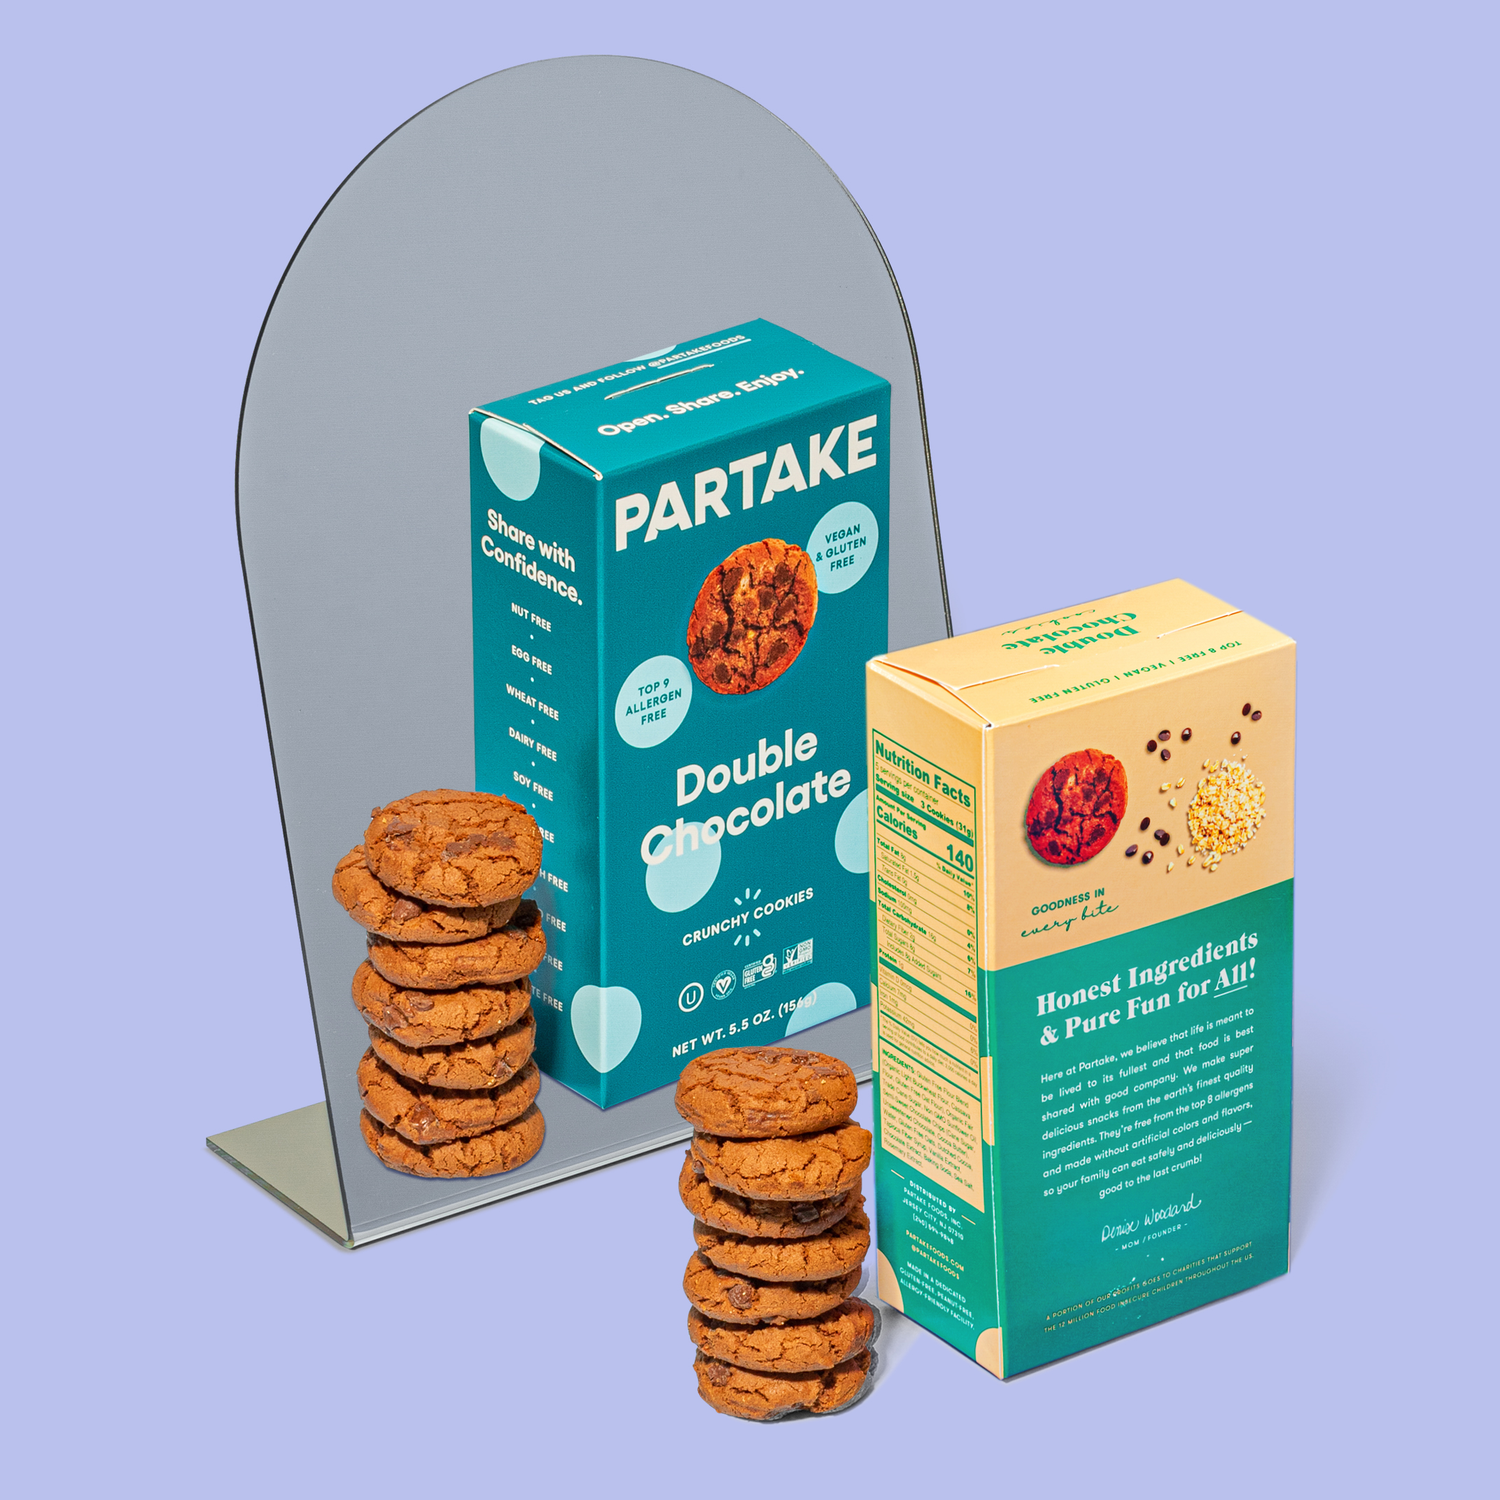 Partake Foods + Crunchy & Soft-Baked Vegan Cookies